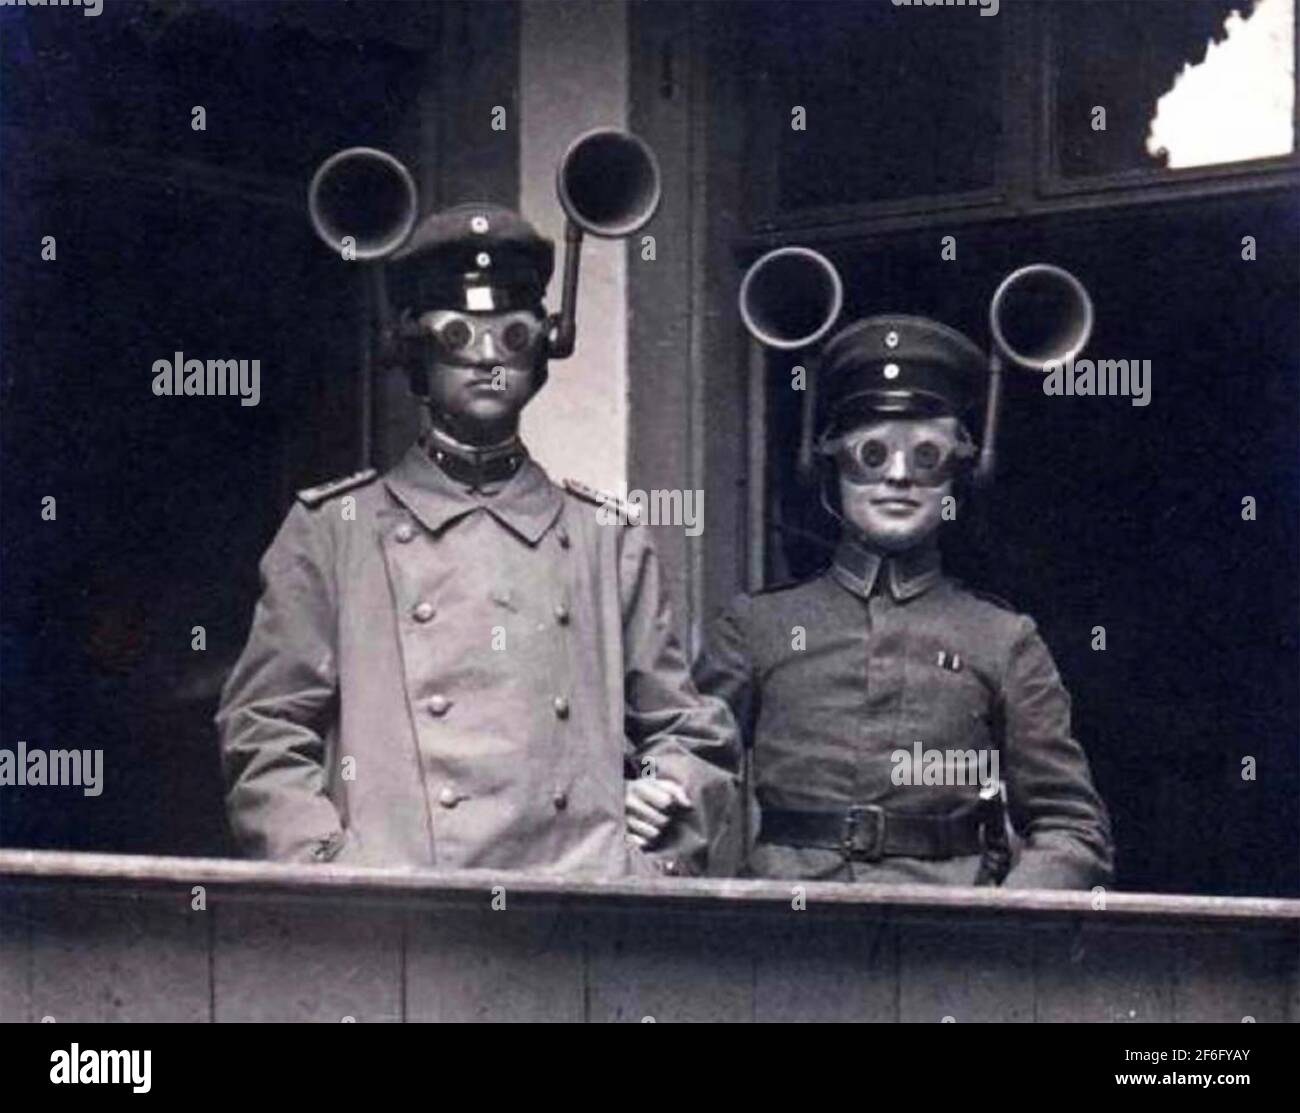 EMPLACEMENT ACOUSTIQUE officiers de l'armée allemande utilisant des détecteurs de son d'avion environ 1914 combinés avec ce qui semblent être des lunettes de soleil. Banque D'Images